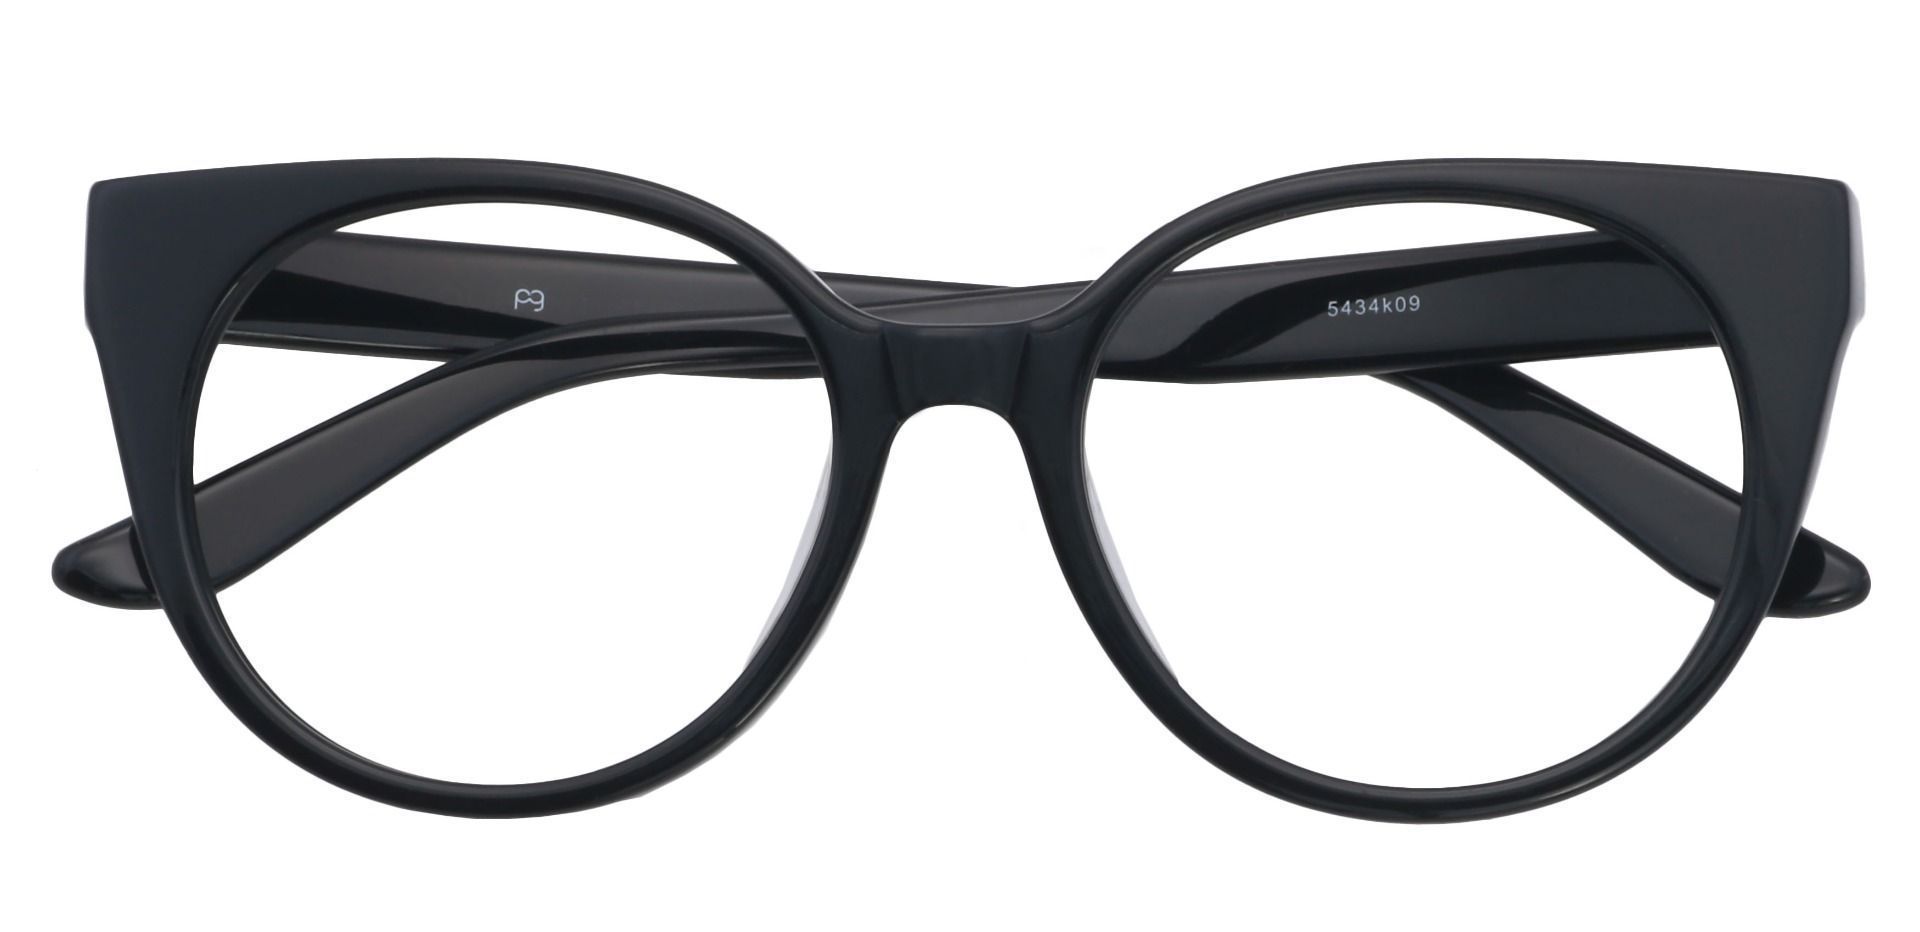 Balmoral Cat-Eye Eyeglasses Frame - Black